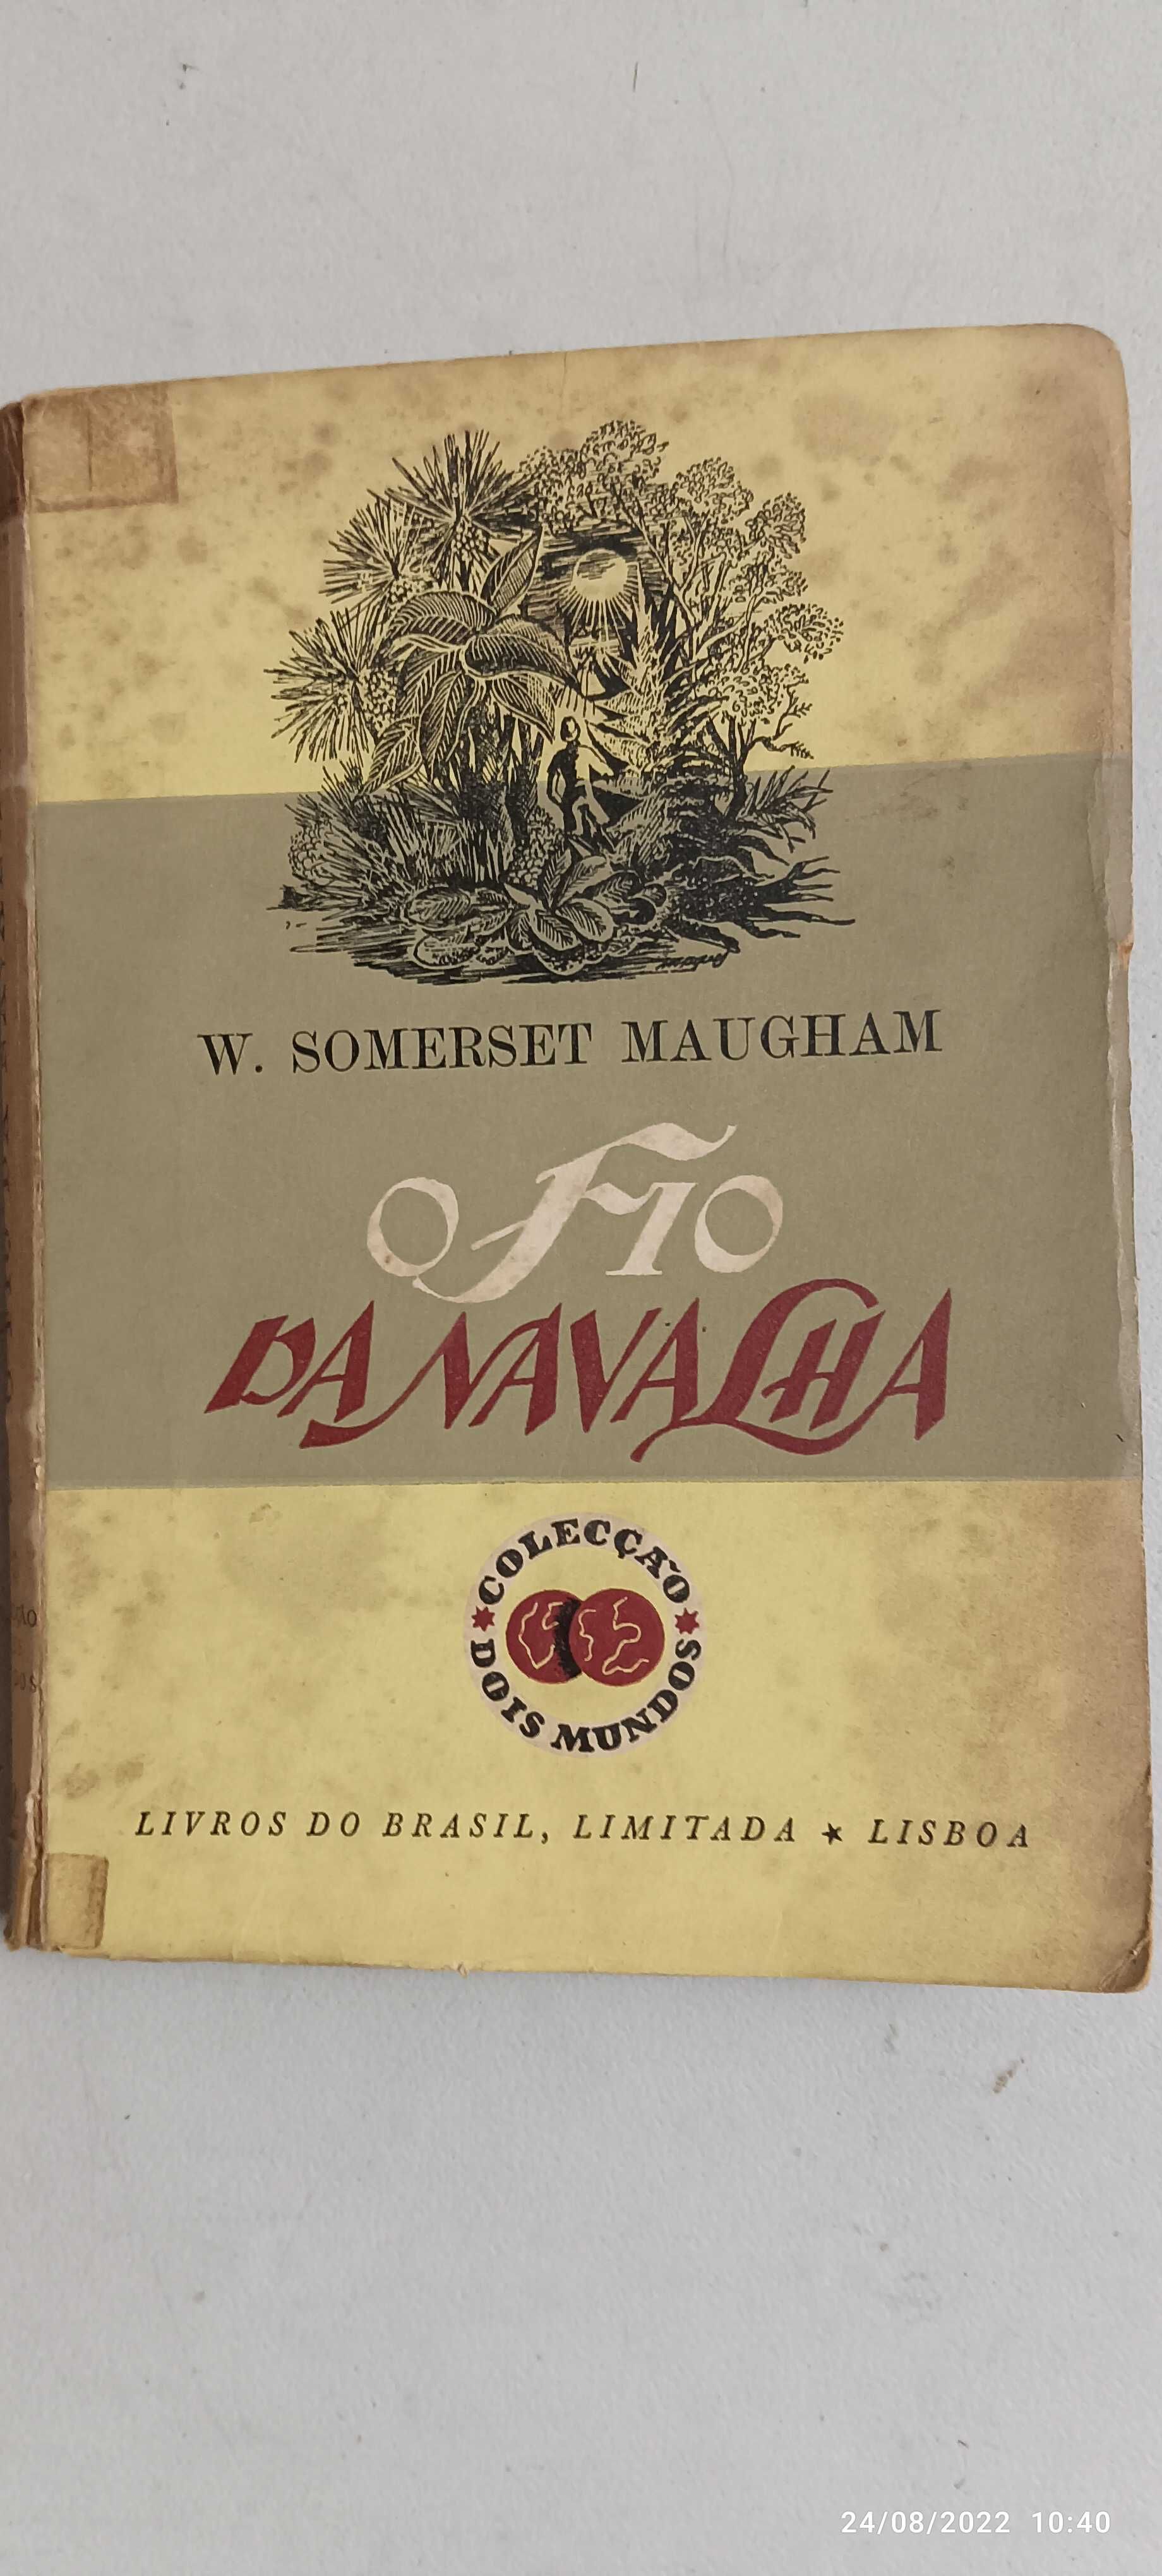 Livro Pa-3 -  W. Somerset Maugham  - O fio da navalha